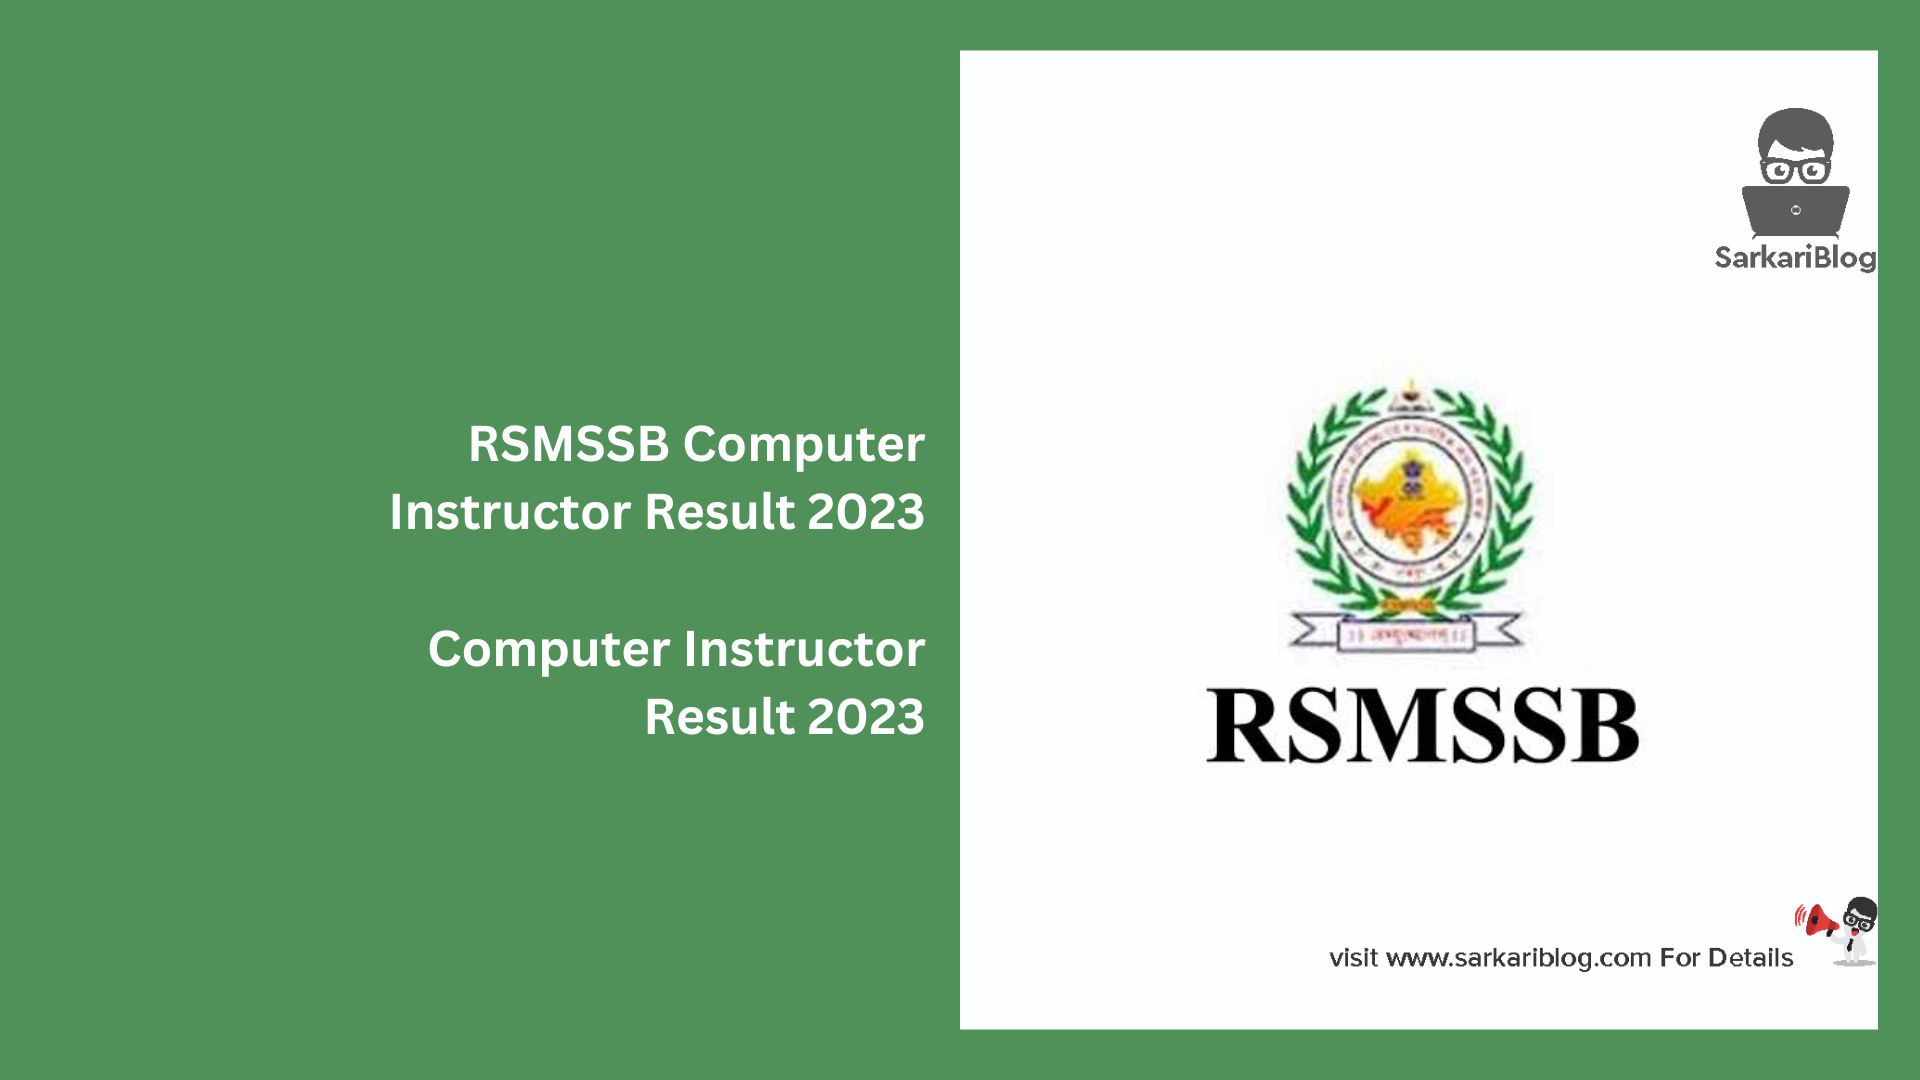 RSMSSB Computer Instructor Result 2023